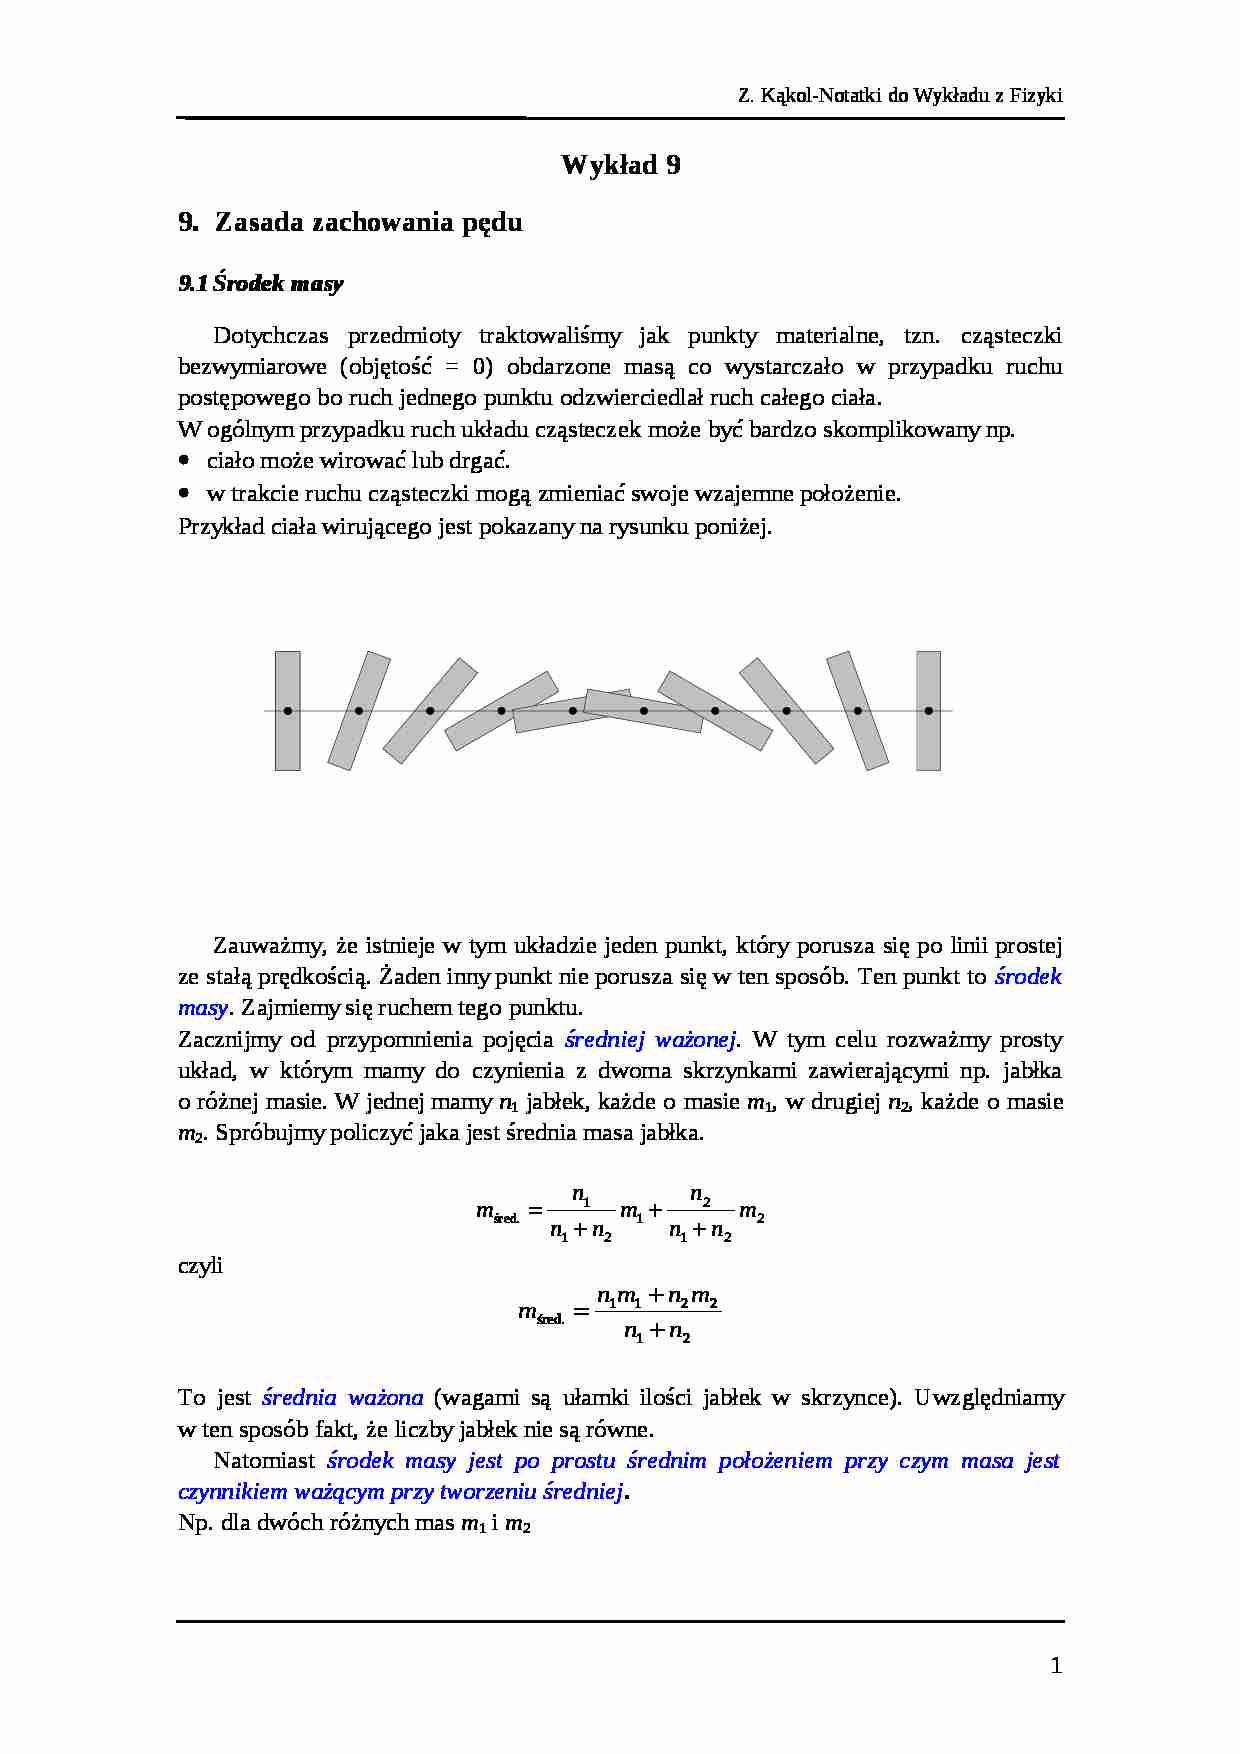 Wykład 9 fizyka AGH - strona 1